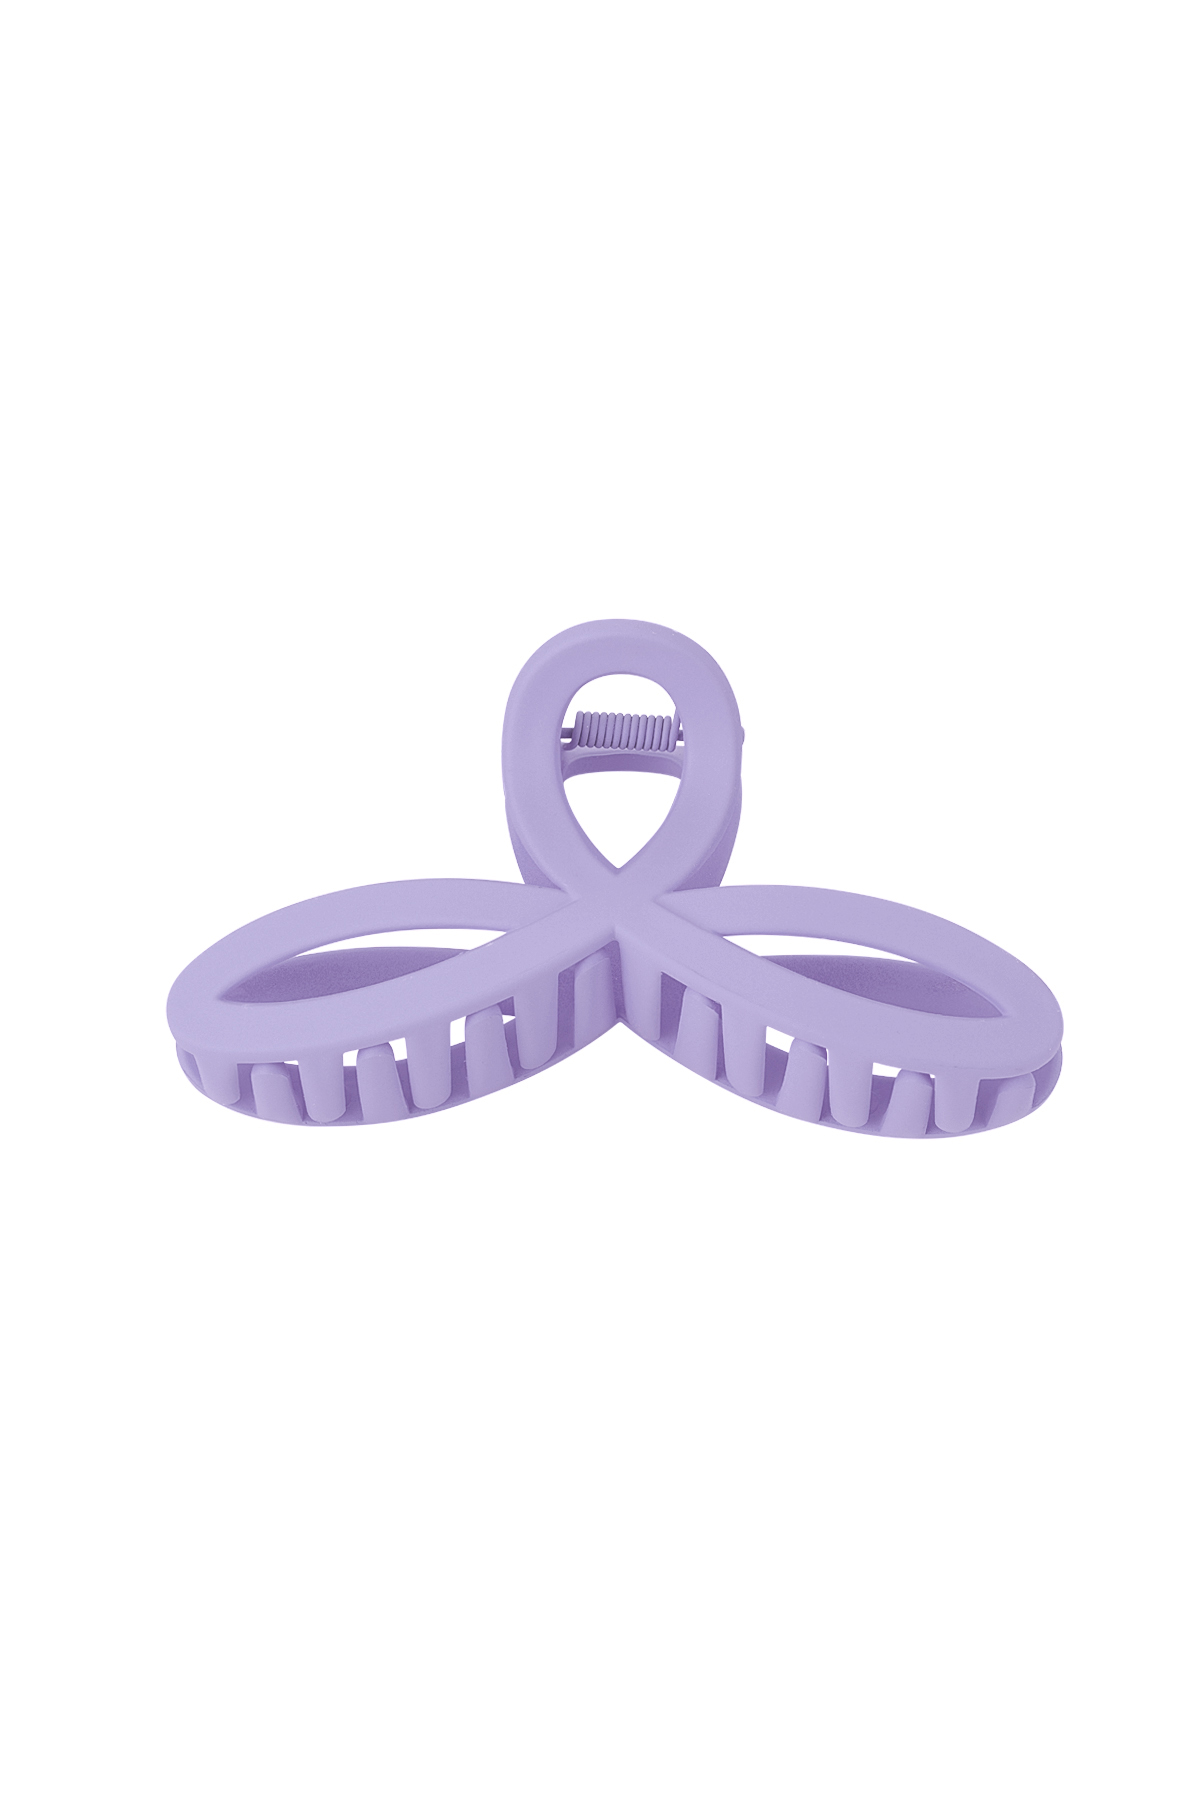 Hair clip cheerful - purple Plasatic h5 